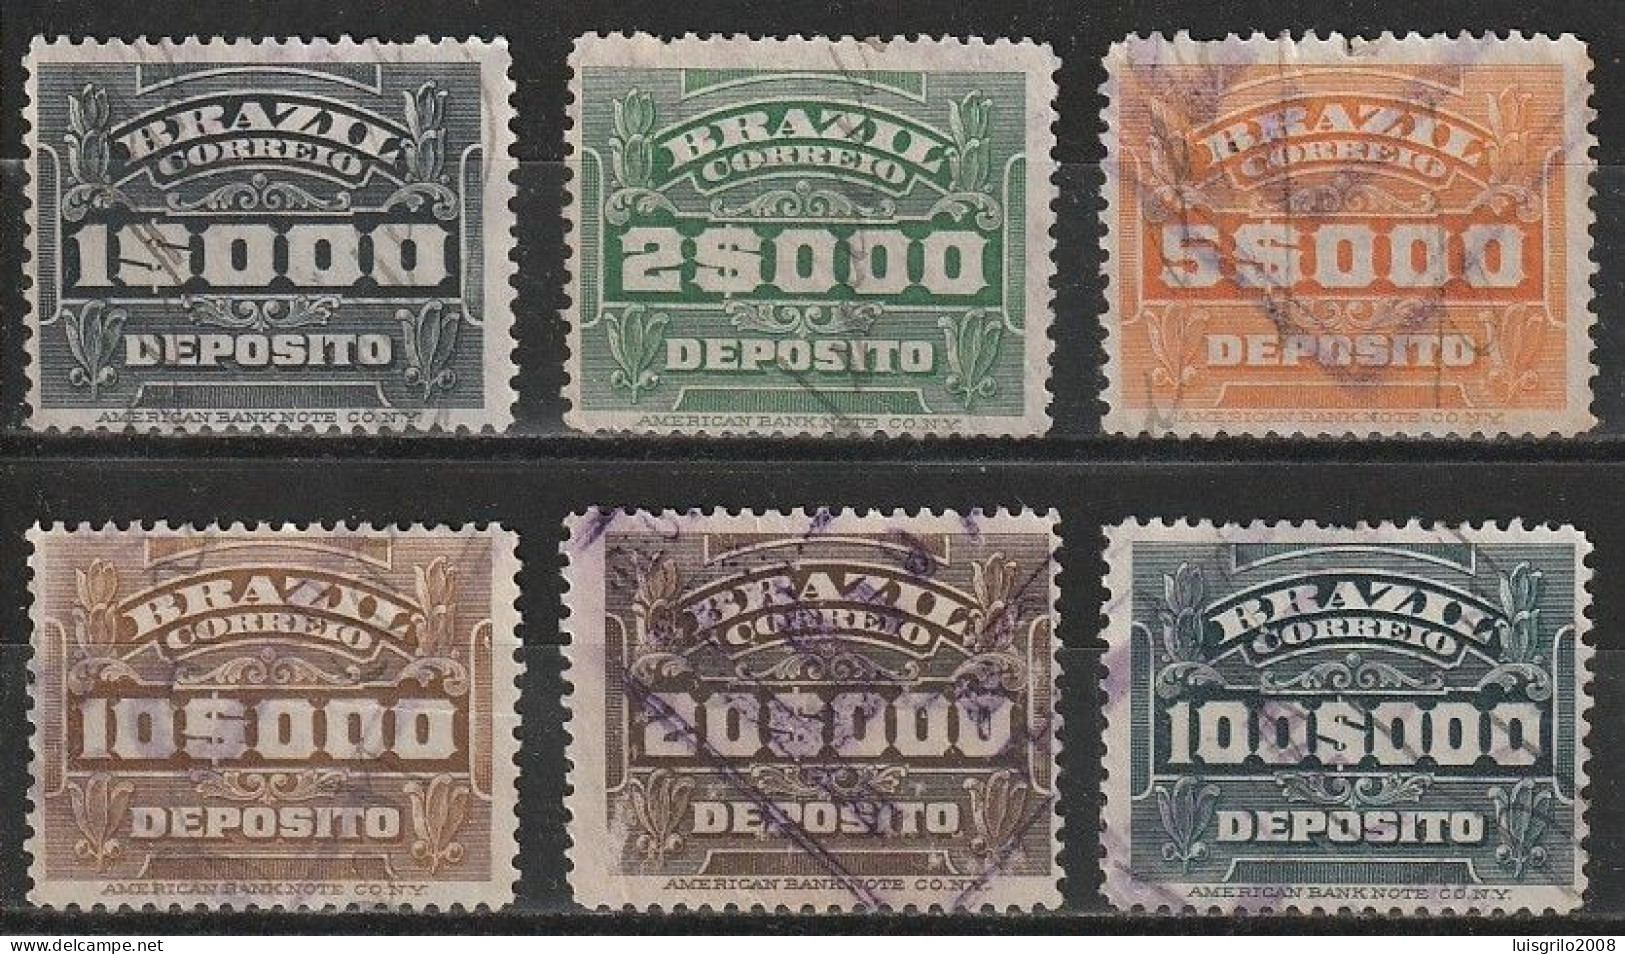 Revenue/ Fiscaux, Brazil 1920 - Depósito, Receita Fiscal -|- 1$000, 2$000, 5$000, 10$000, 20$000, 100$000 - Servizio